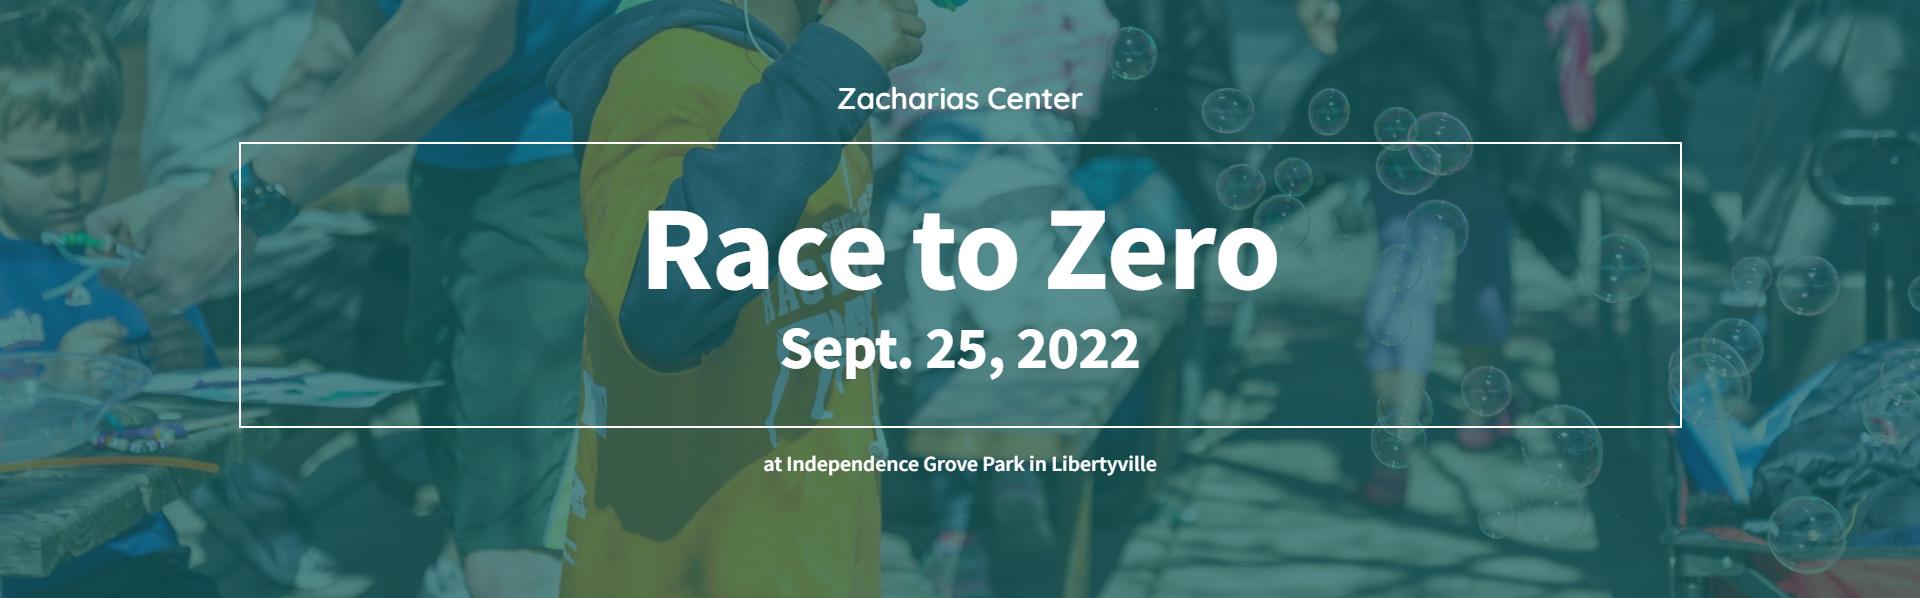 race-to-zero-2022